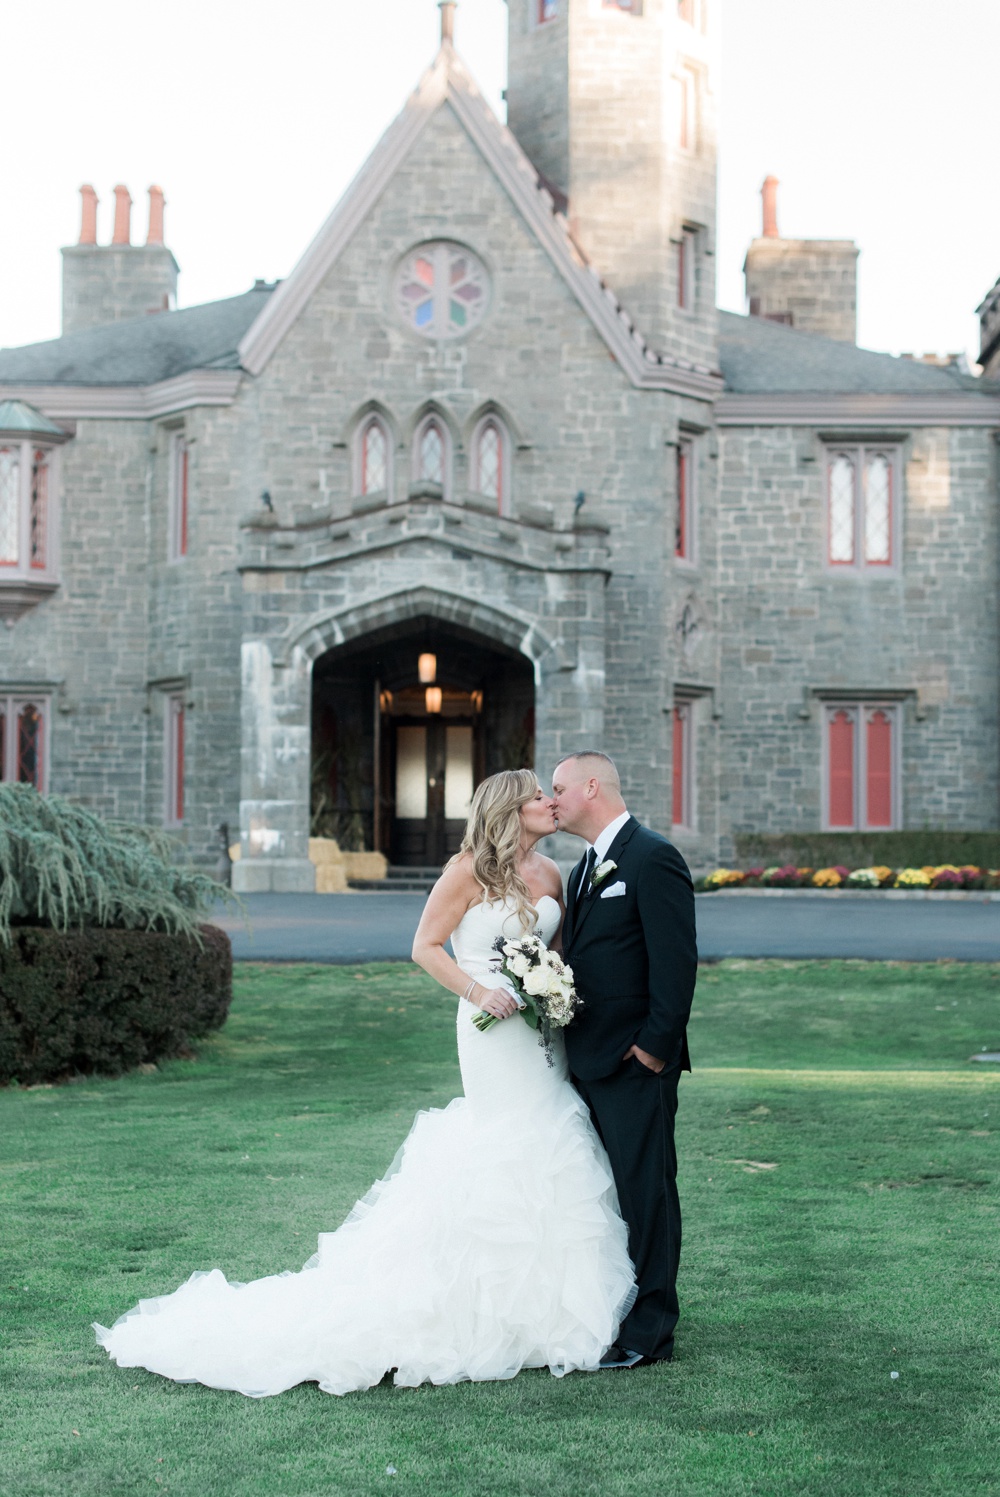 Whitby Castle Wedding | Nicole DeTone Photography